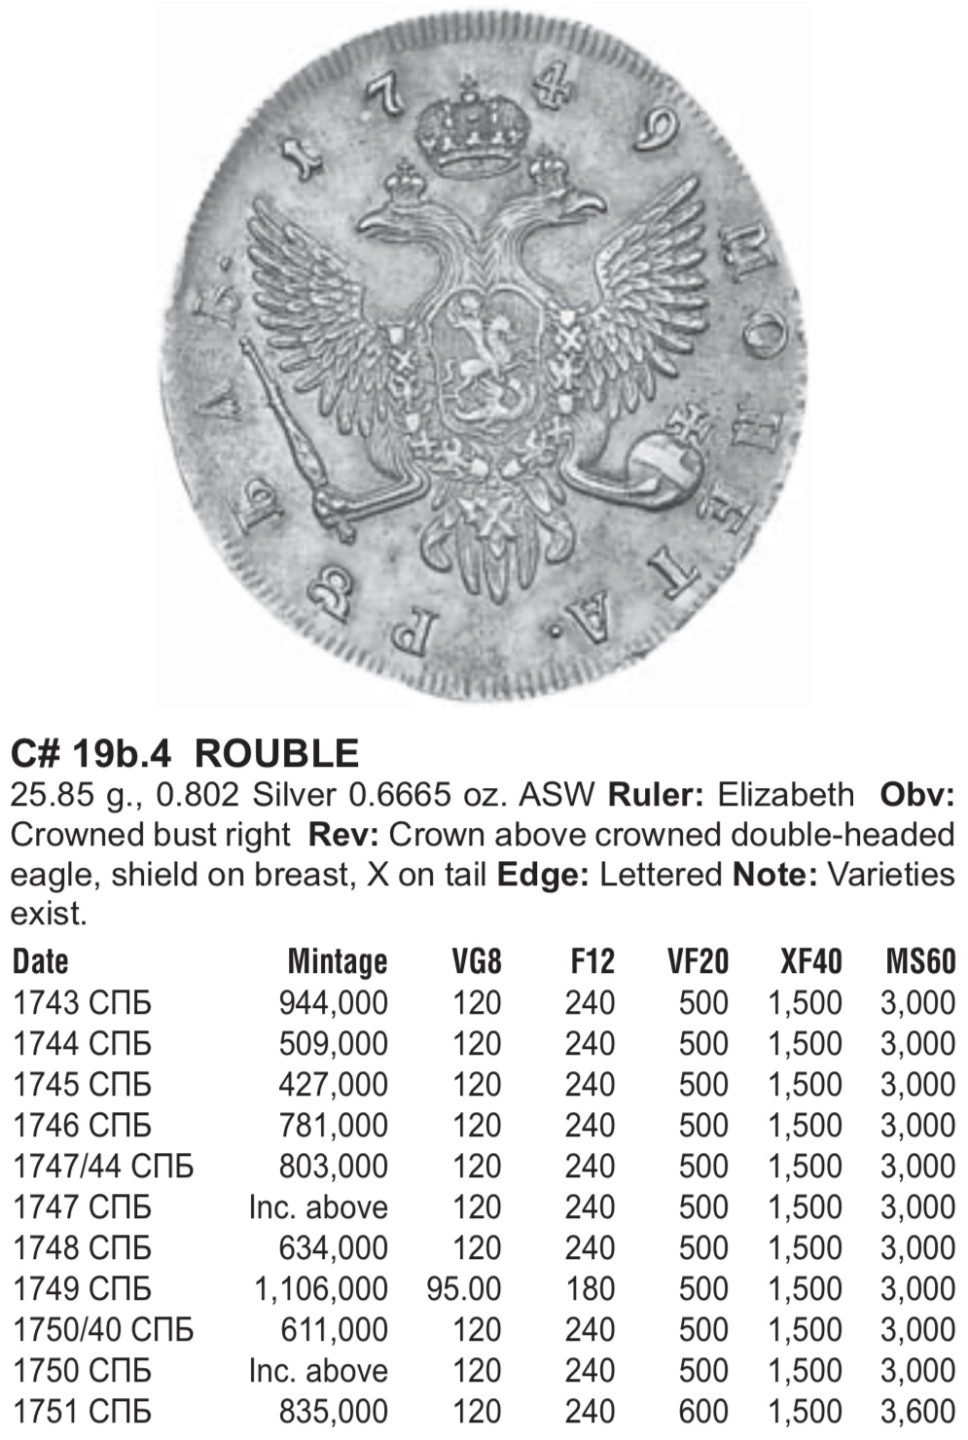 1751沙俄帝国伊丽莎白女王1卢布大银币